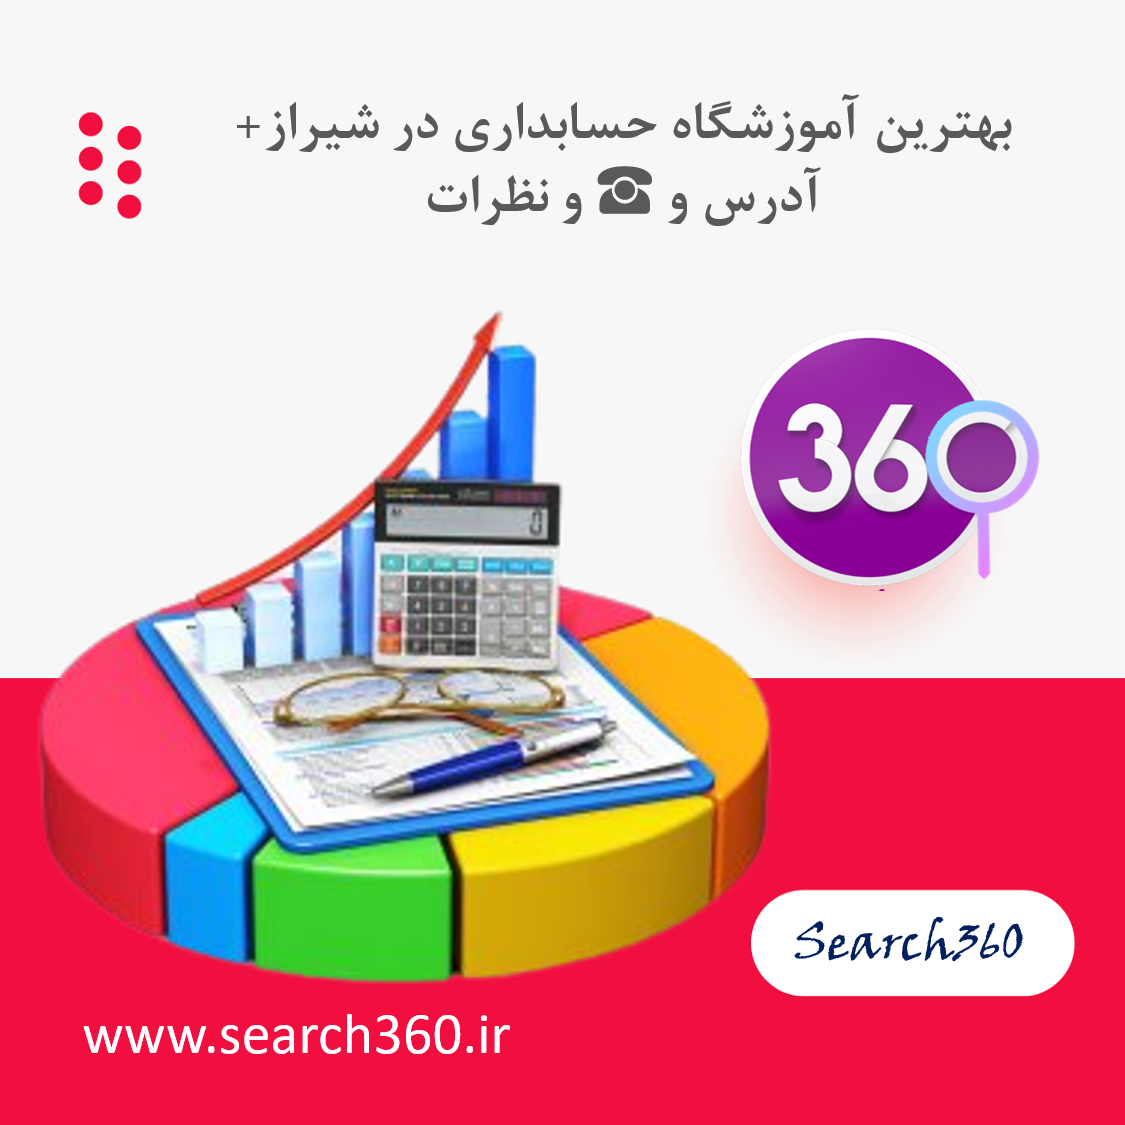 بهترین آموزشگاه حسابداری در شیراز با نظرات ، تلفن ☎️ و آدرس